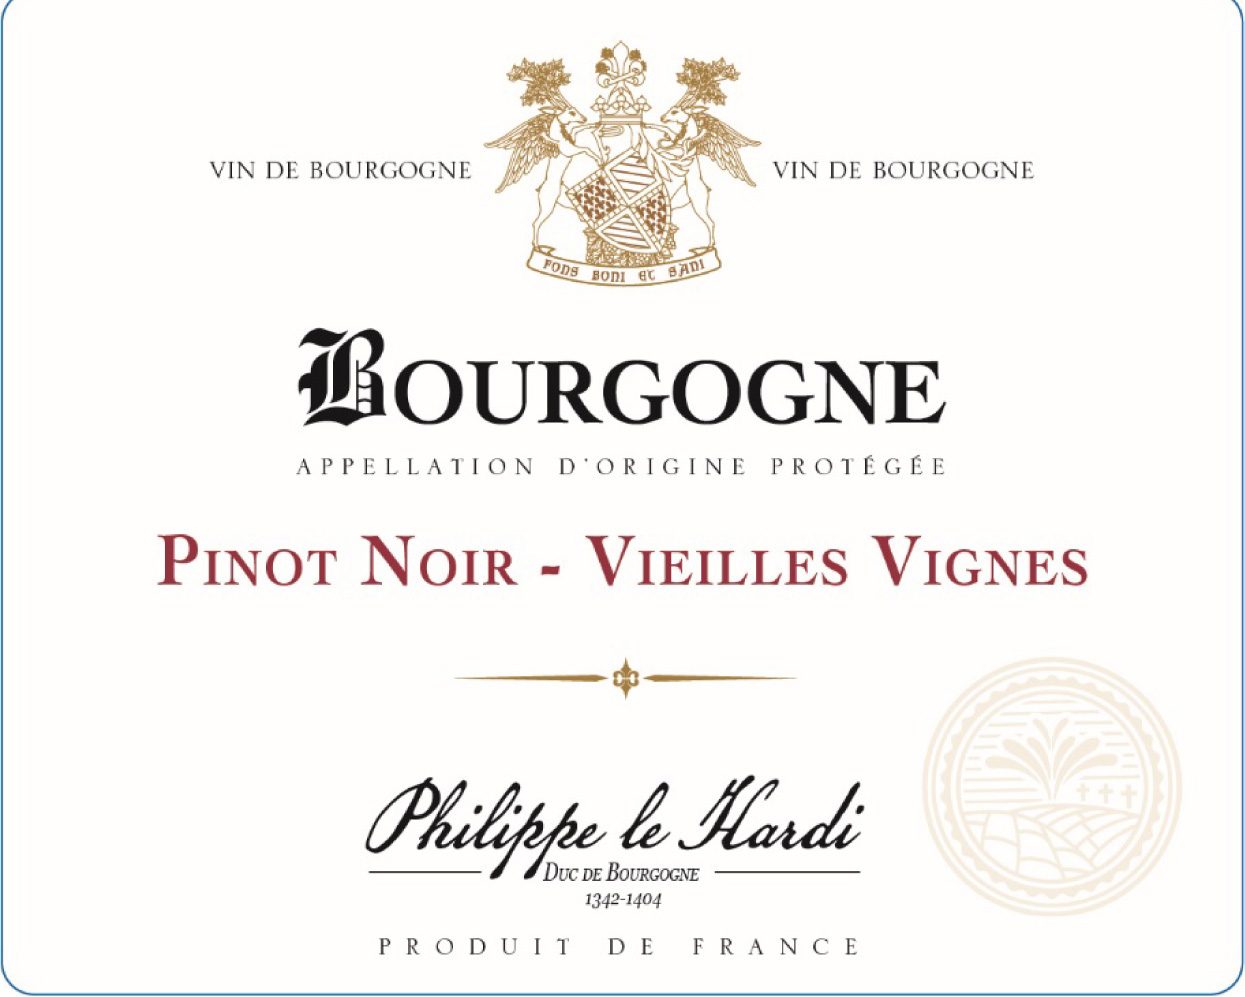 Philippe le Hardi - Pinot Noir - Vieilles Vignes label